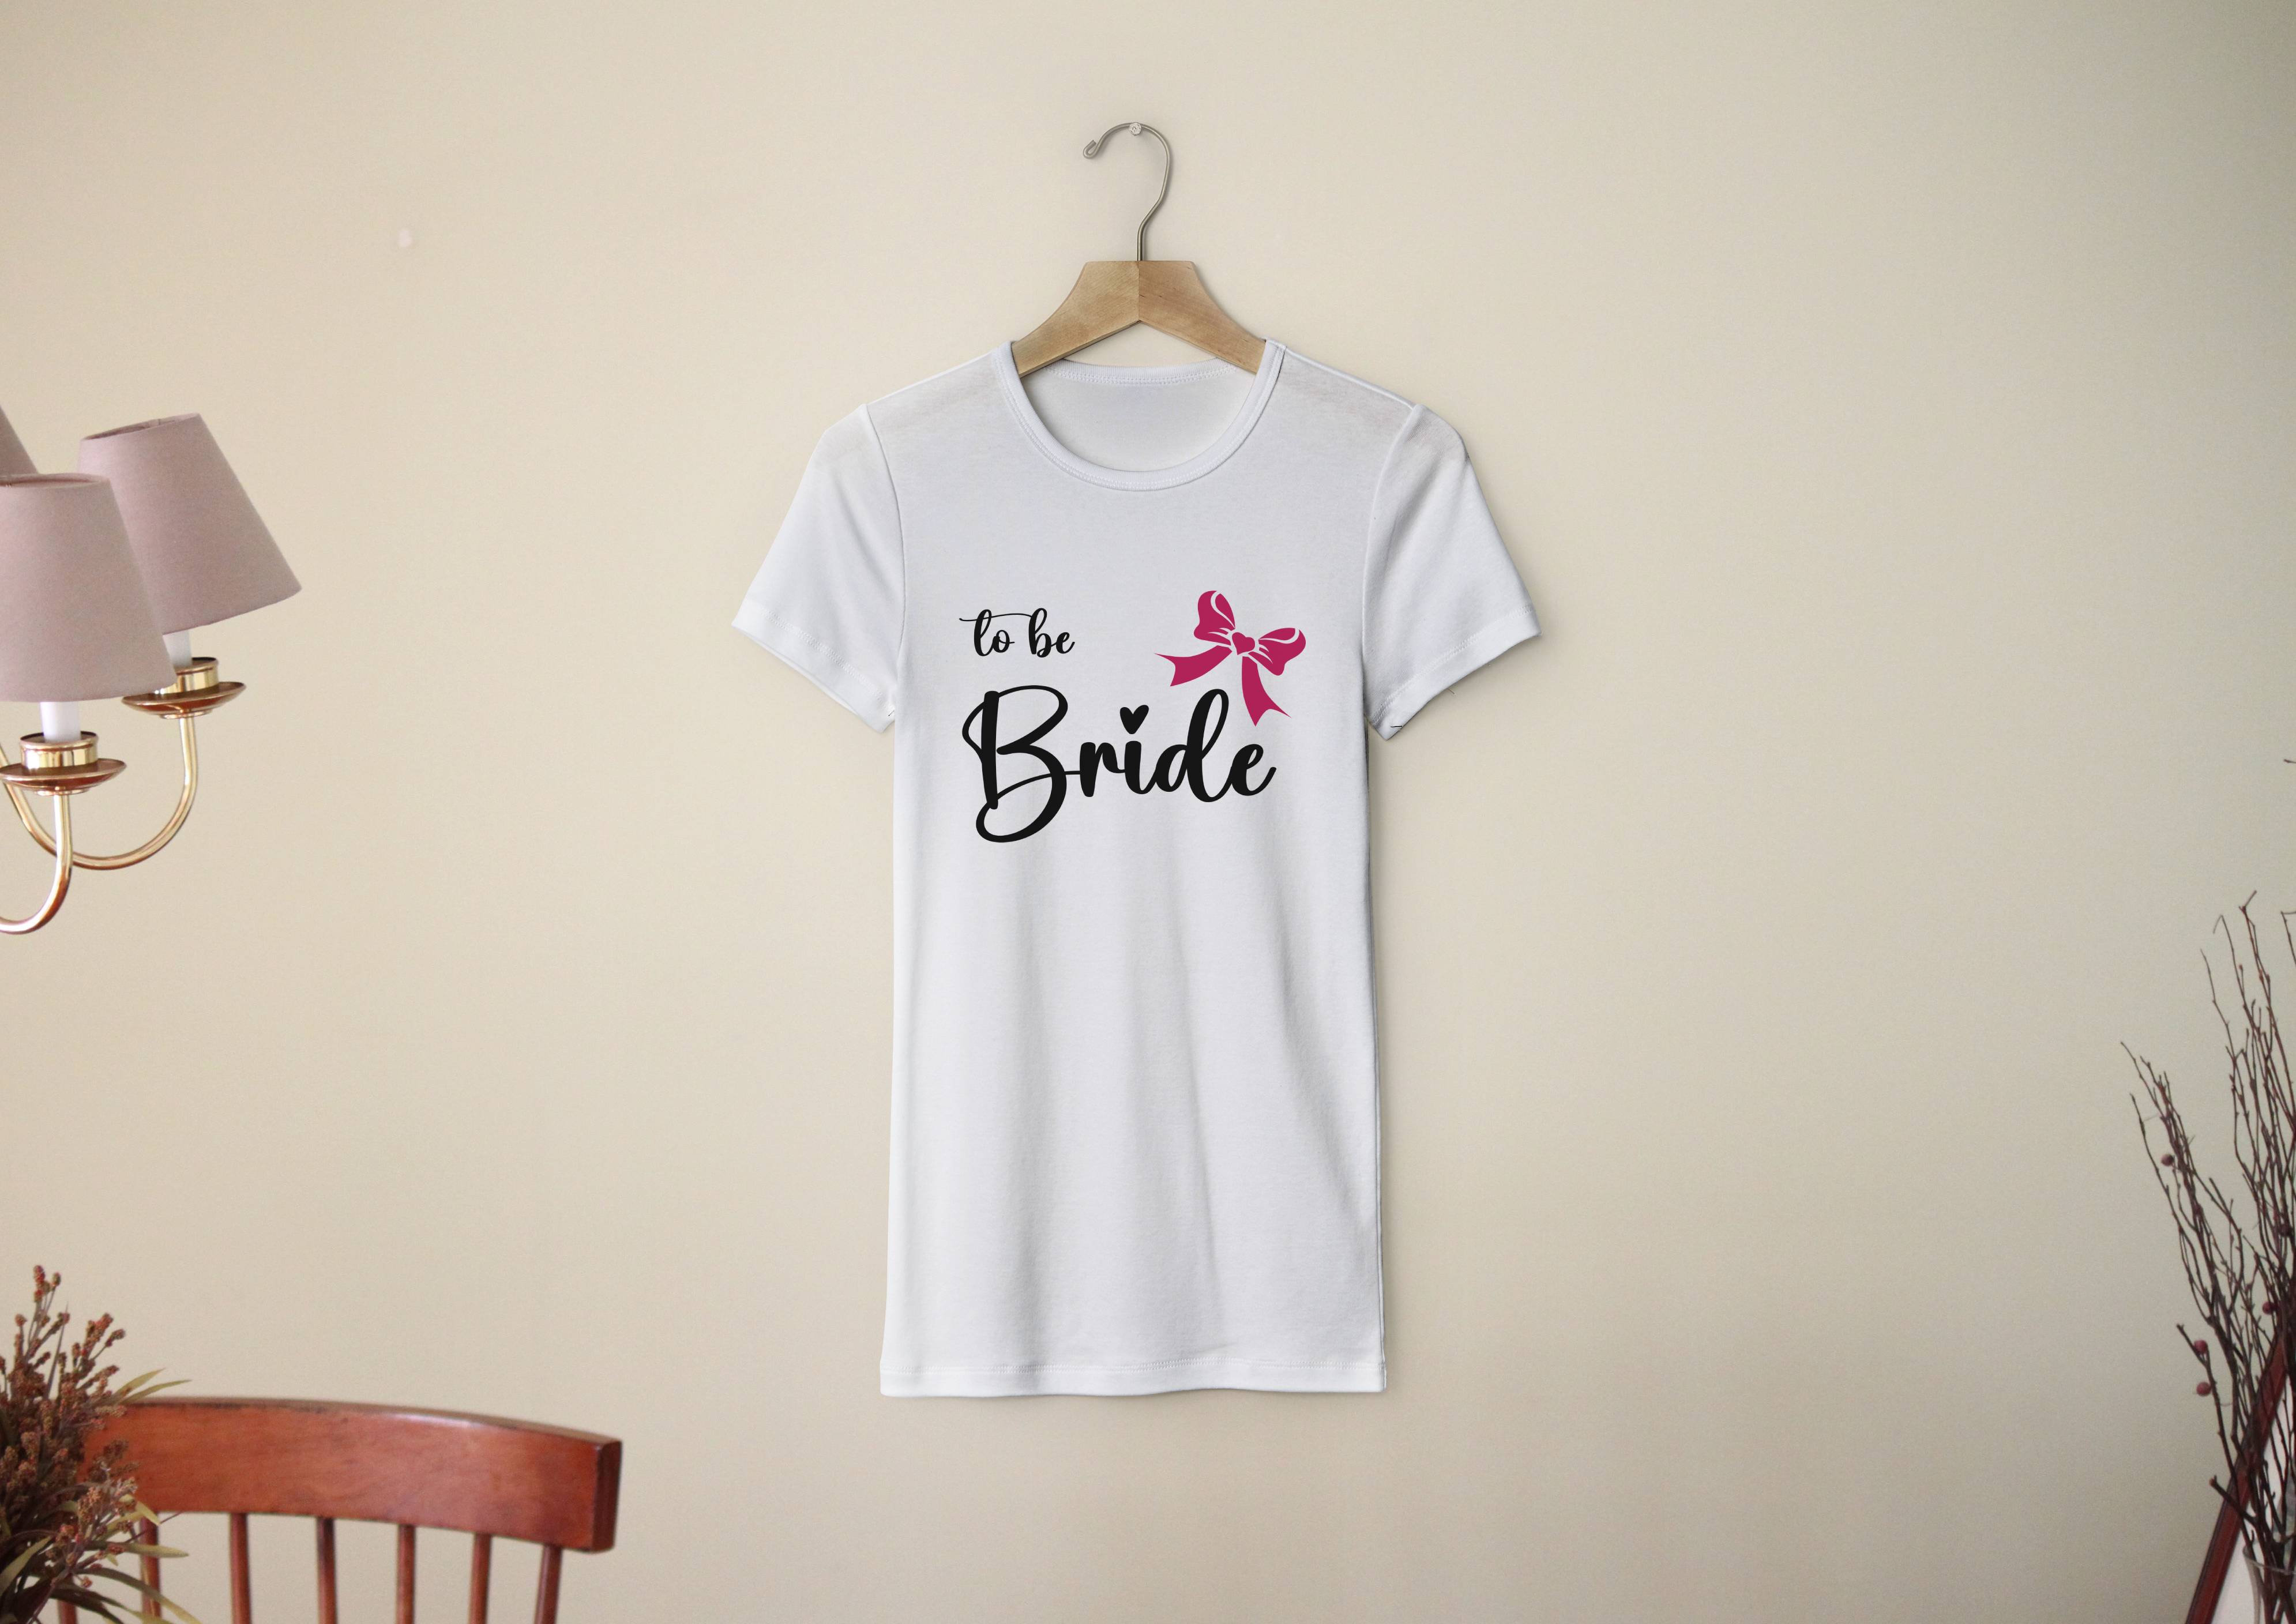 Personal Dámske tričko - Bride to be mašlička Farba: biela, Veľkosť - dospelý: XL